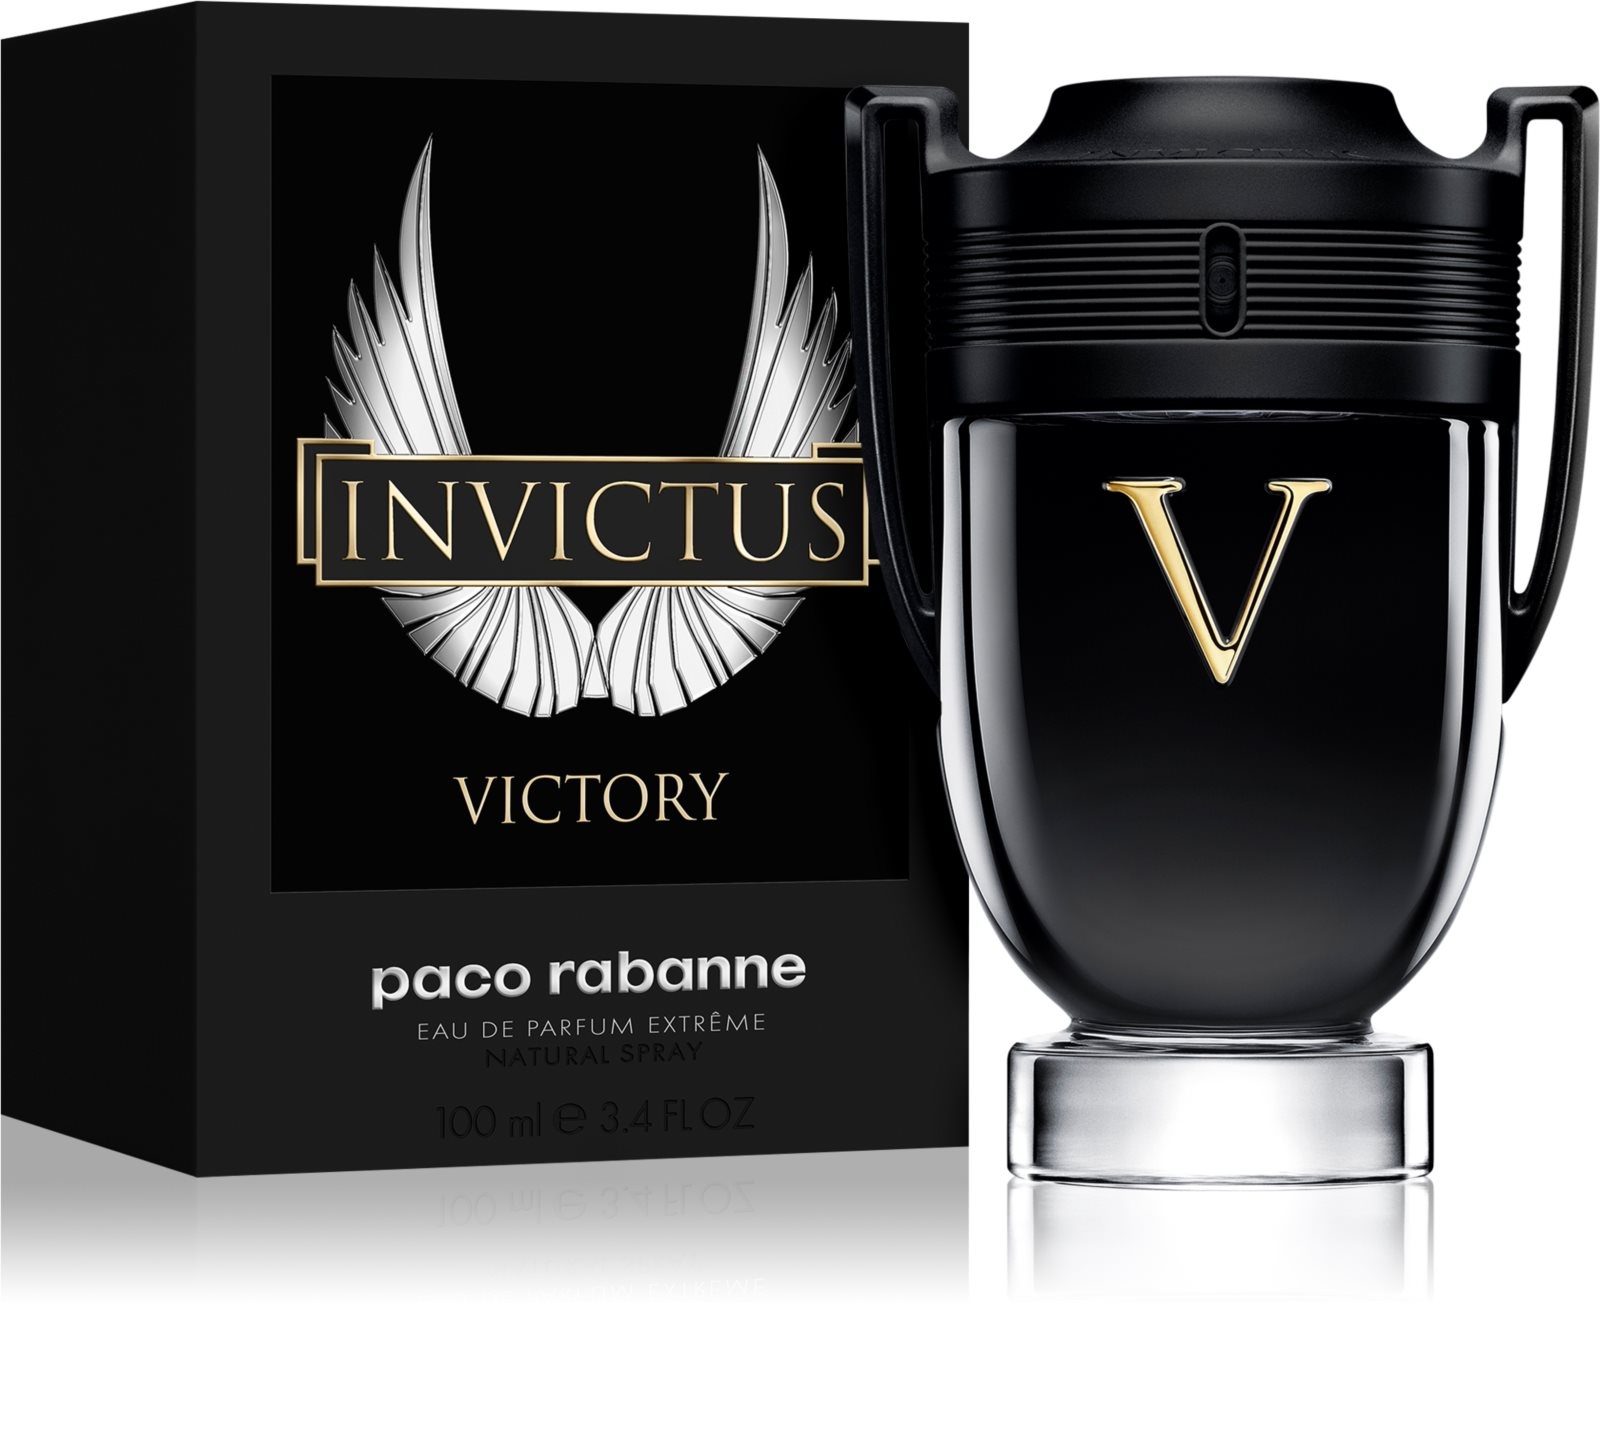 Paco Rabanne Invictus Victory parfémovaná voda pro muže 100 ml